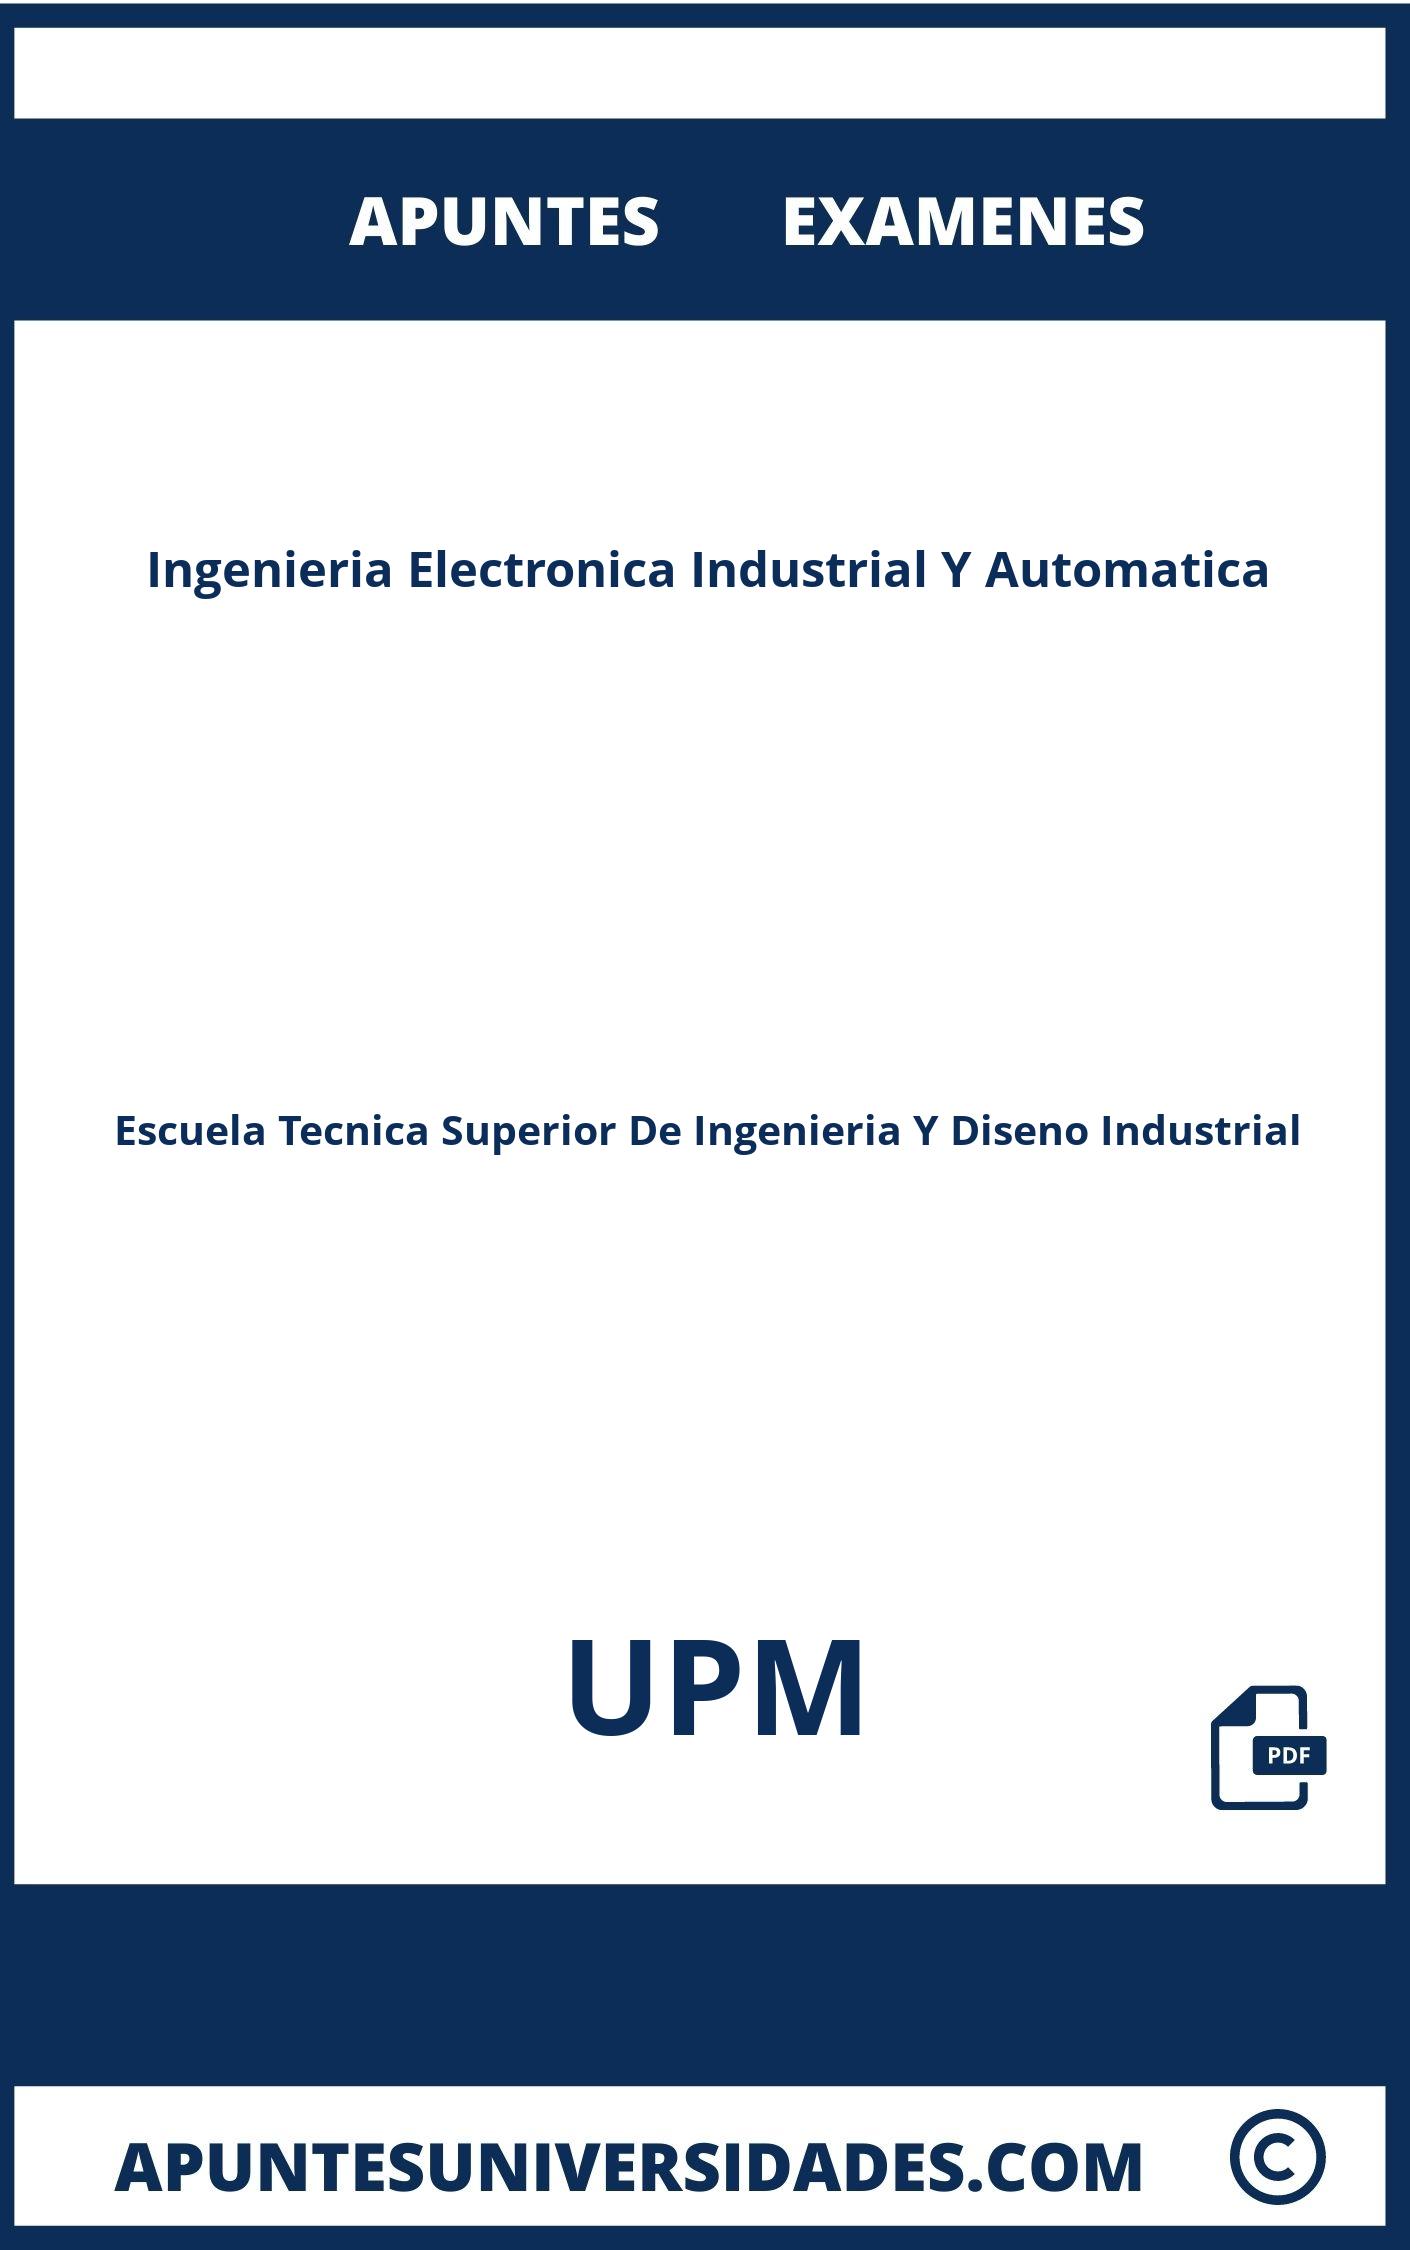 Apuntes Examenes Ingenieria Electronica Industrial Y Automatica UPM